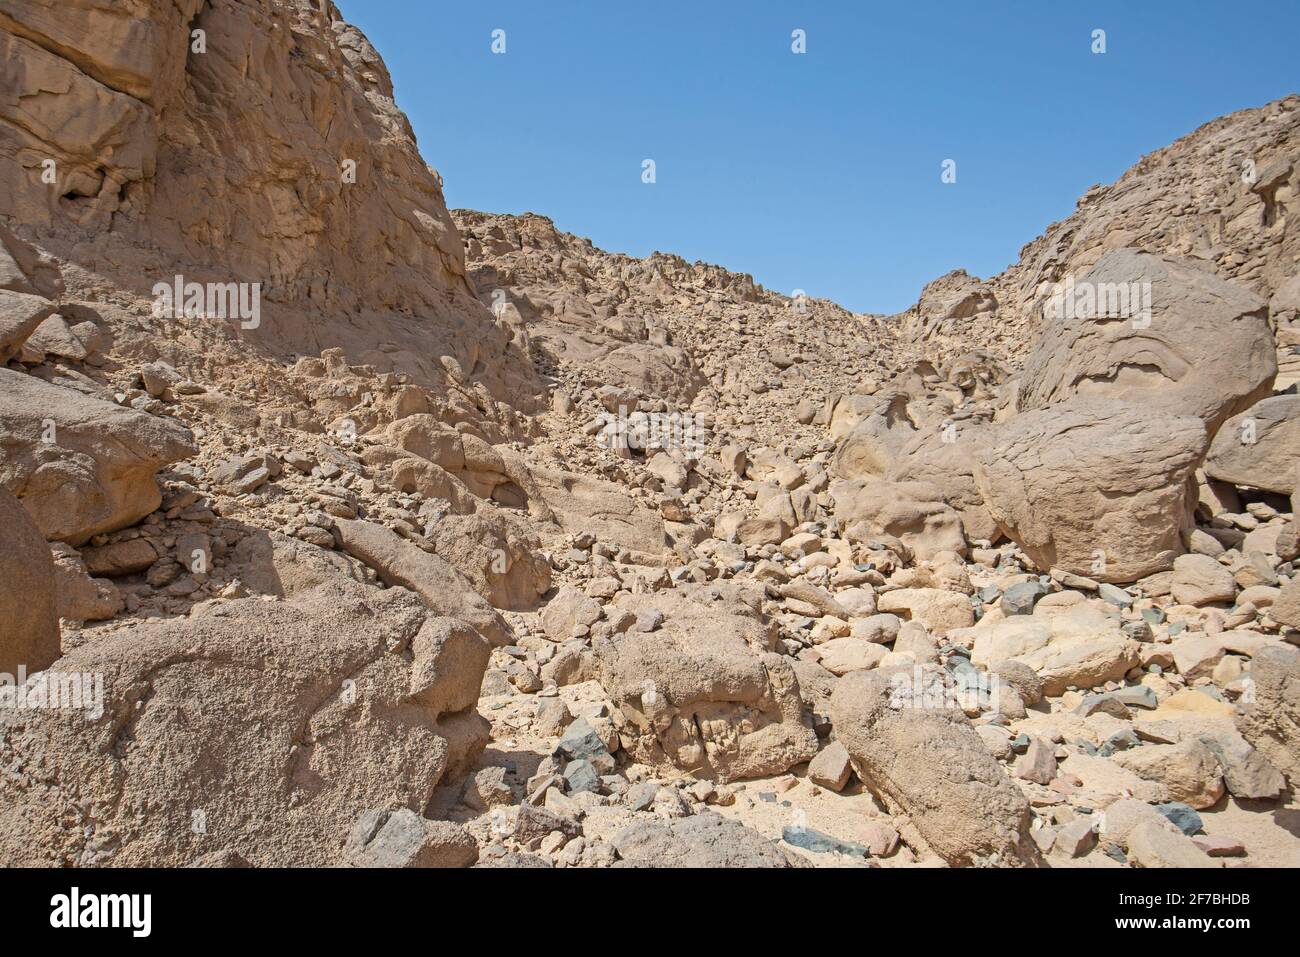 Felsigen Hang Berglandschaft in einer trockenen Wüste Umgebung Stockfoto